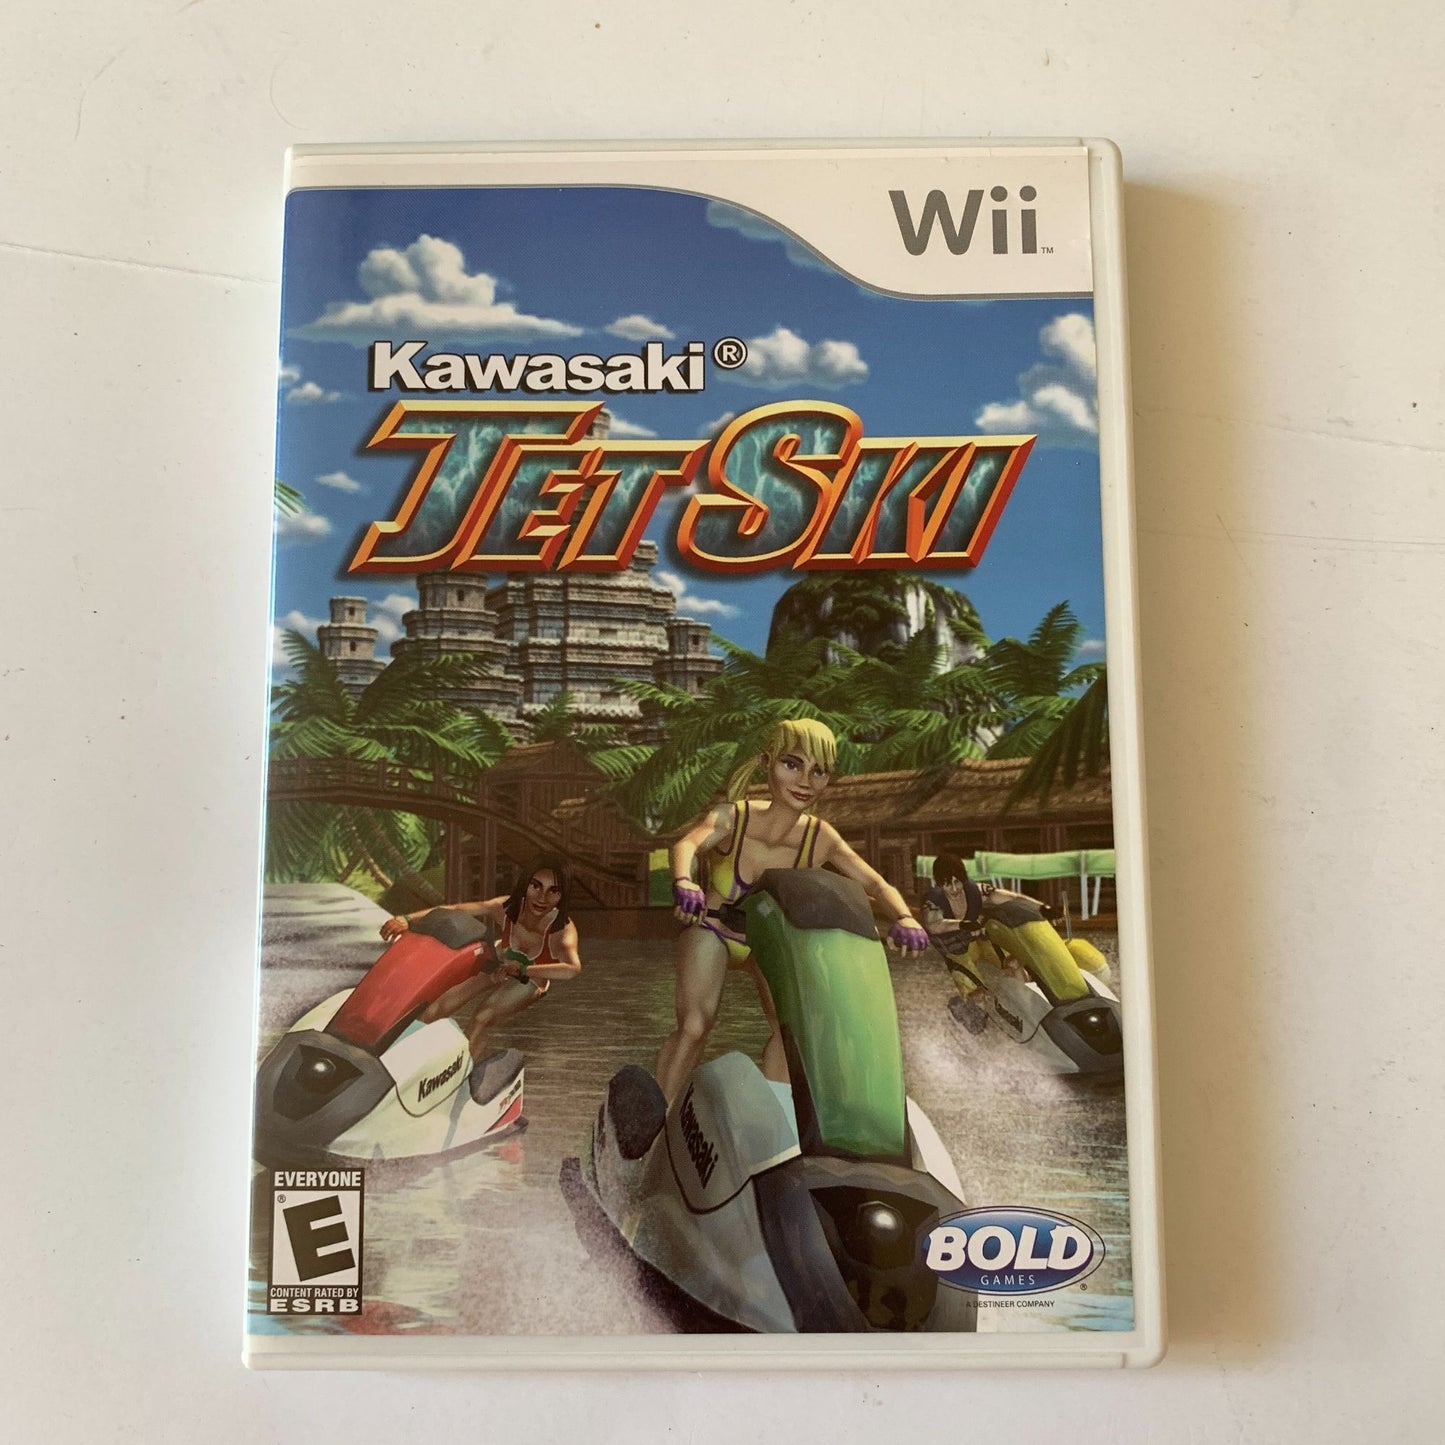 Nintendo Wii Kawasaki Jet Ski Game Disc & Case